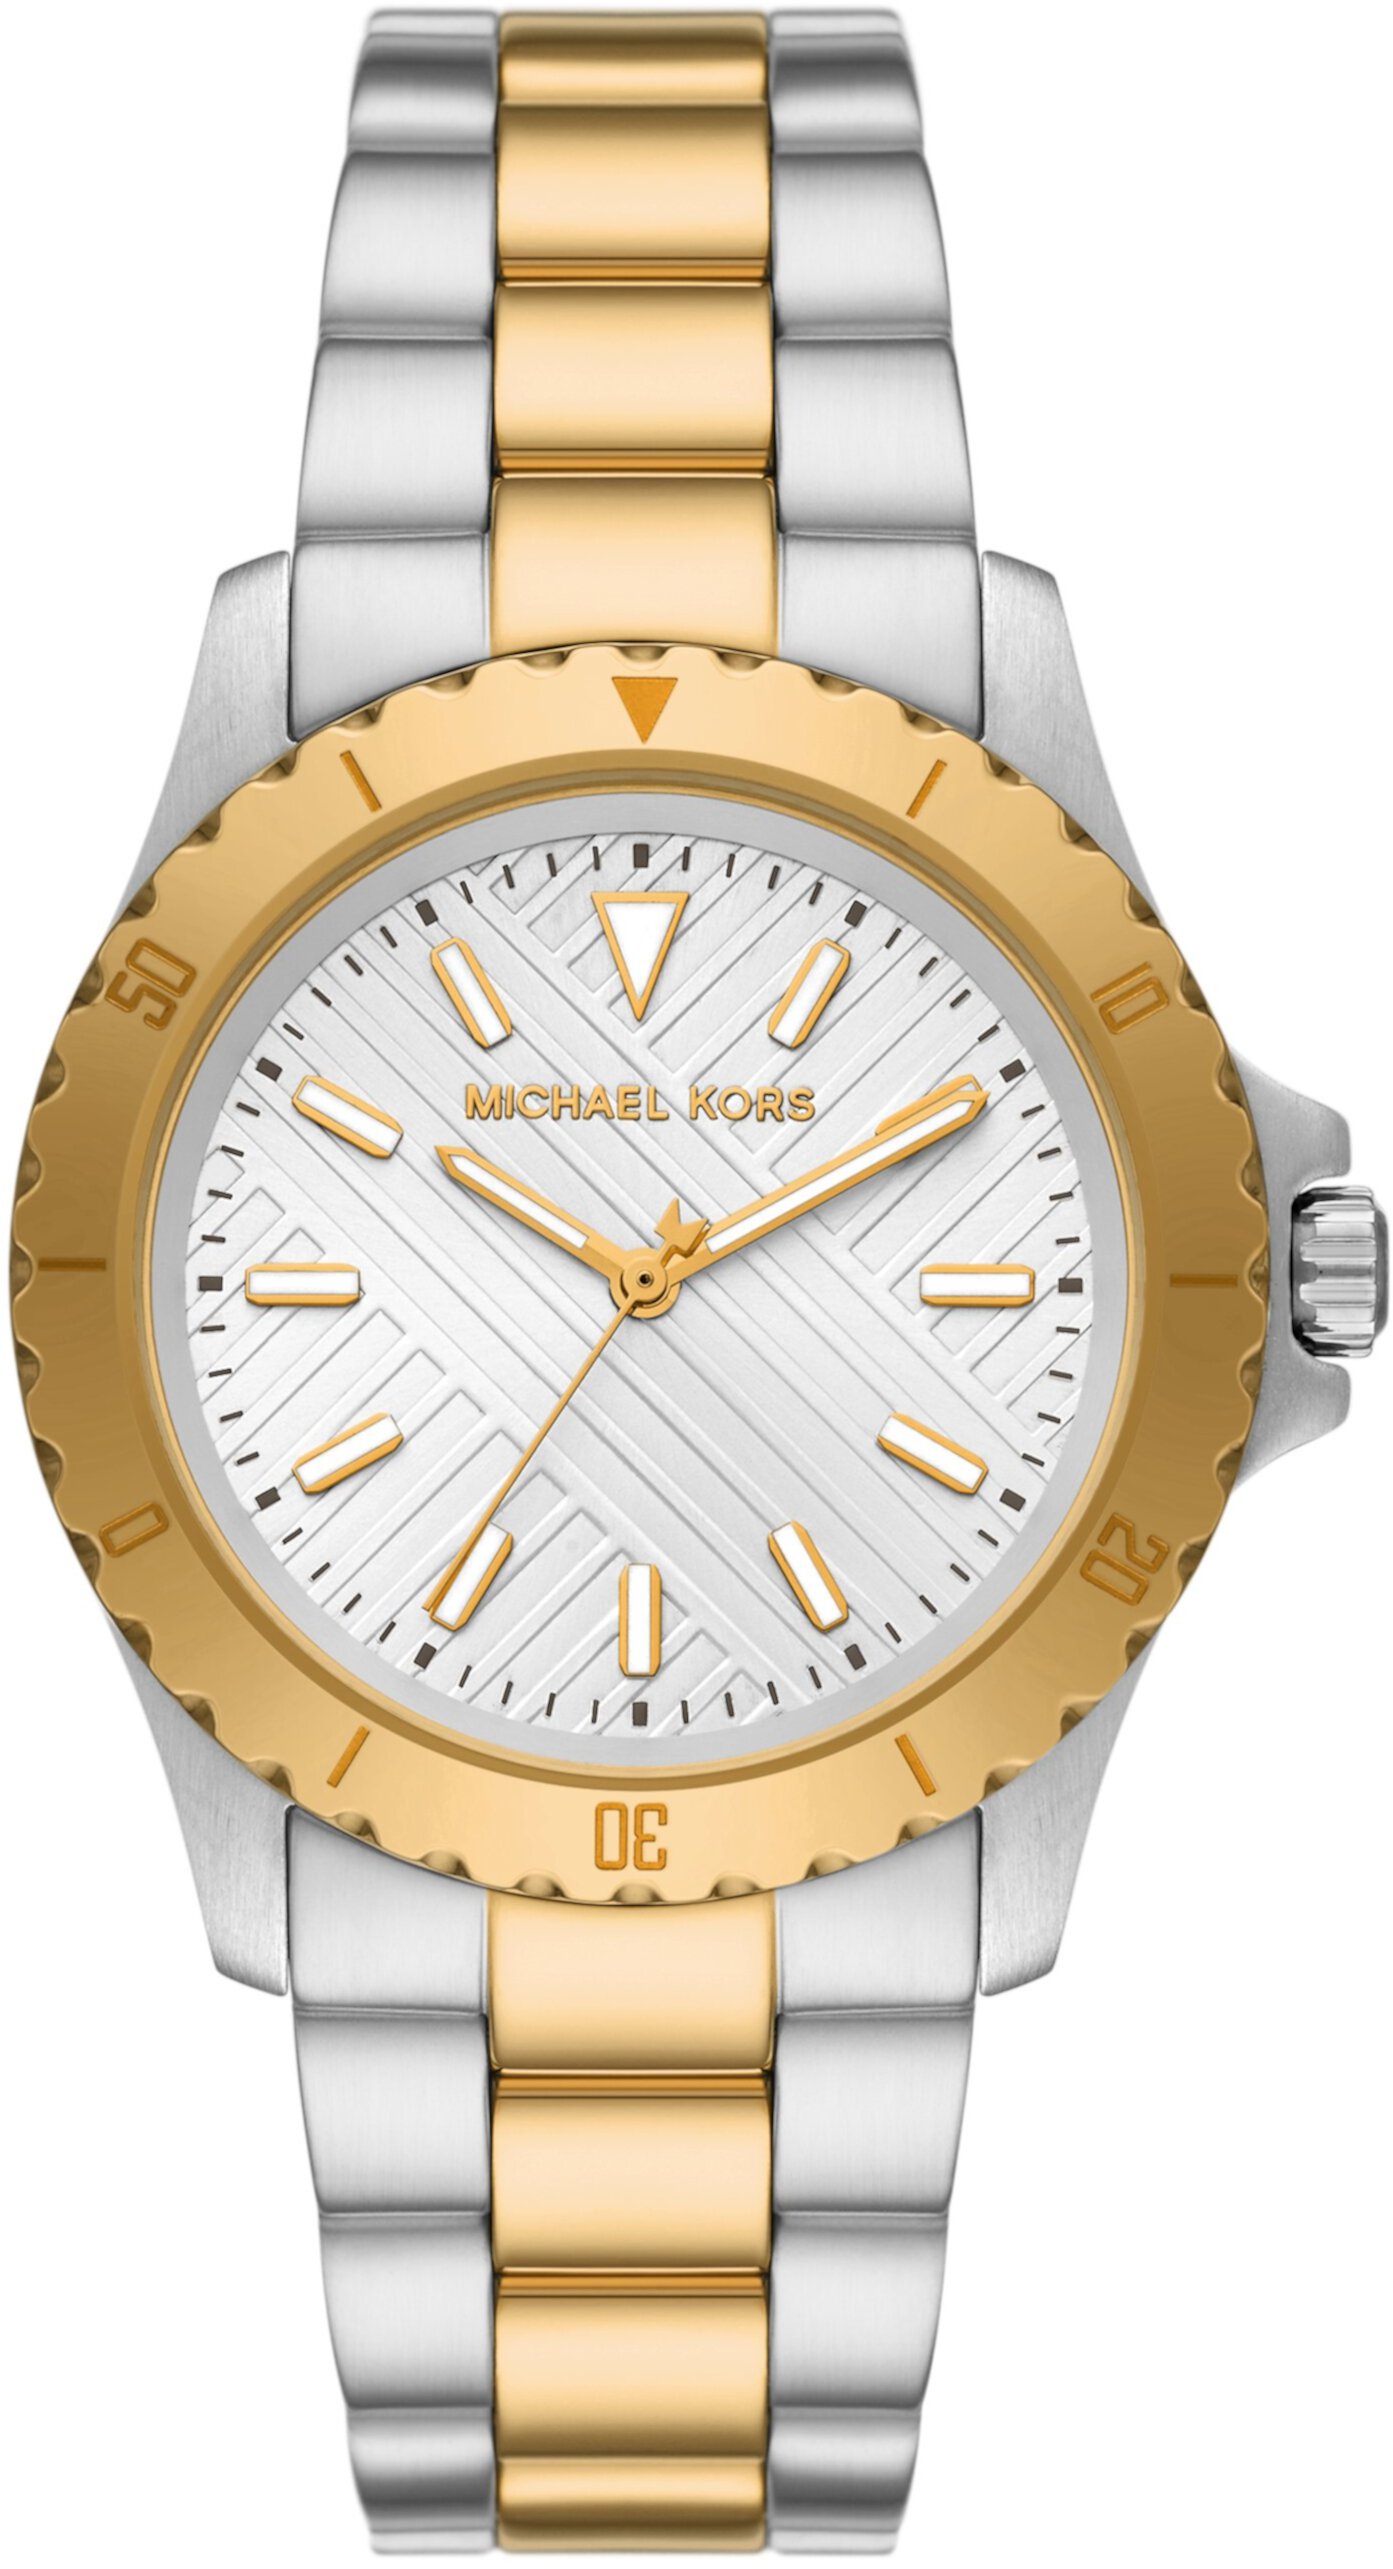 MK9141 — Тонкие часы Everest с тремя стрелками Michael Kors